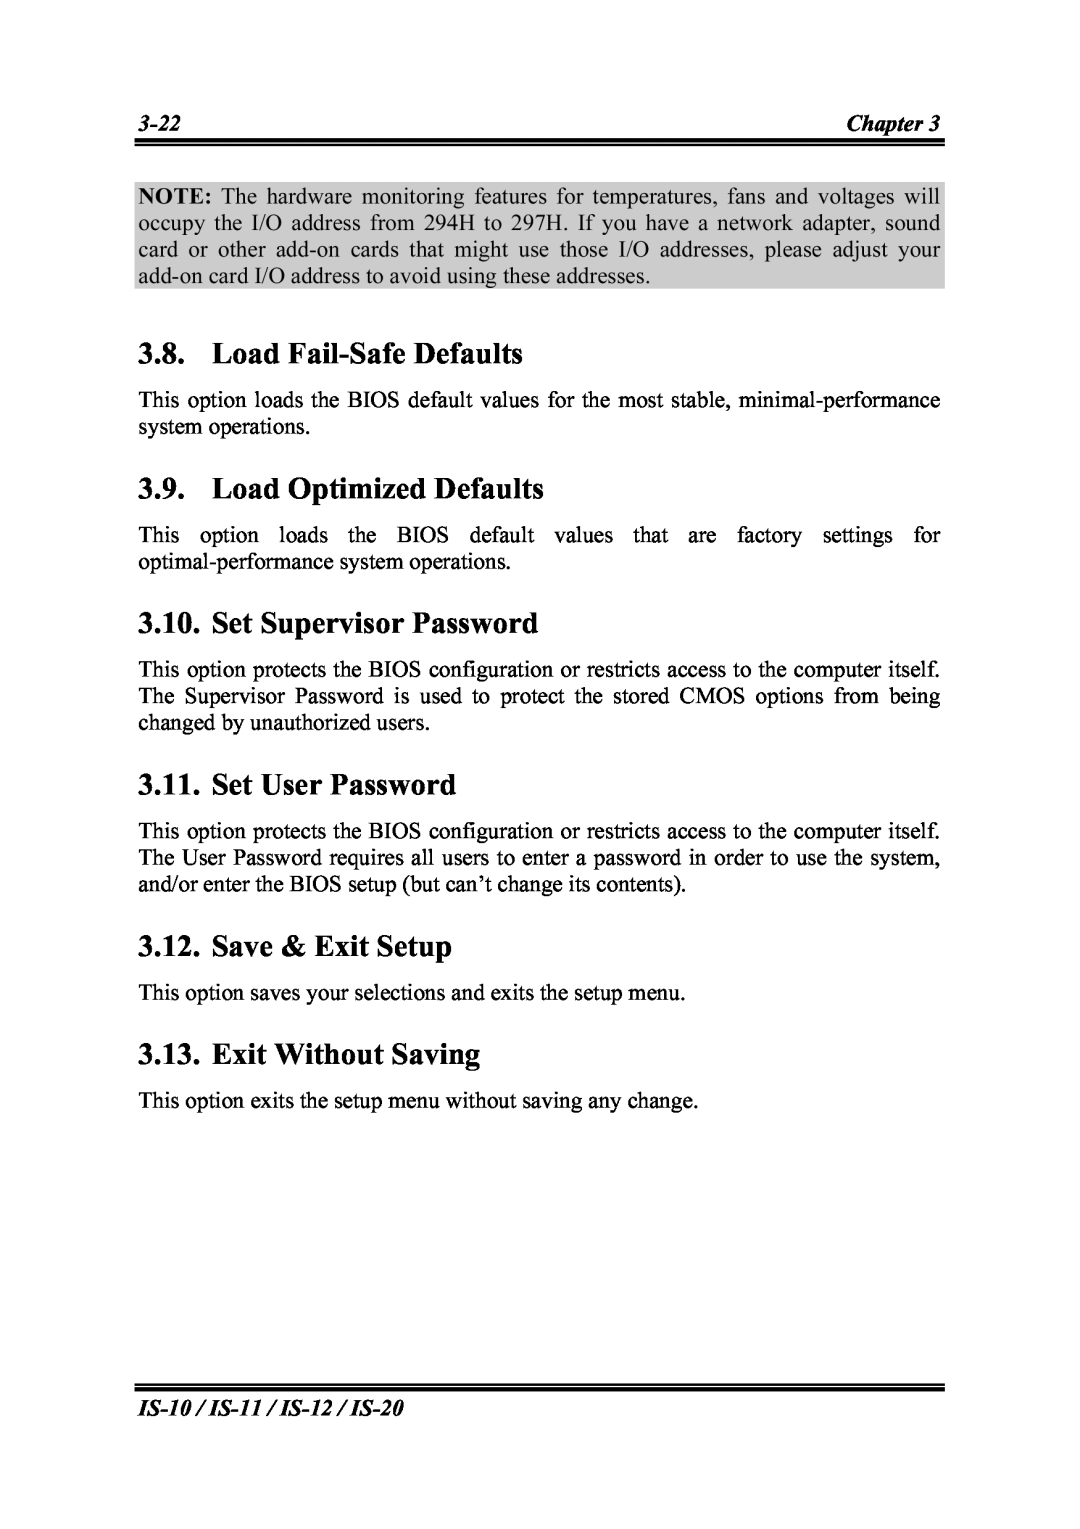 Abit IS-12 Load Fail-Safe Defaults, Load Optimized Defaults, Set Supervisor Password, Set User Password, Save & Exit Setup 